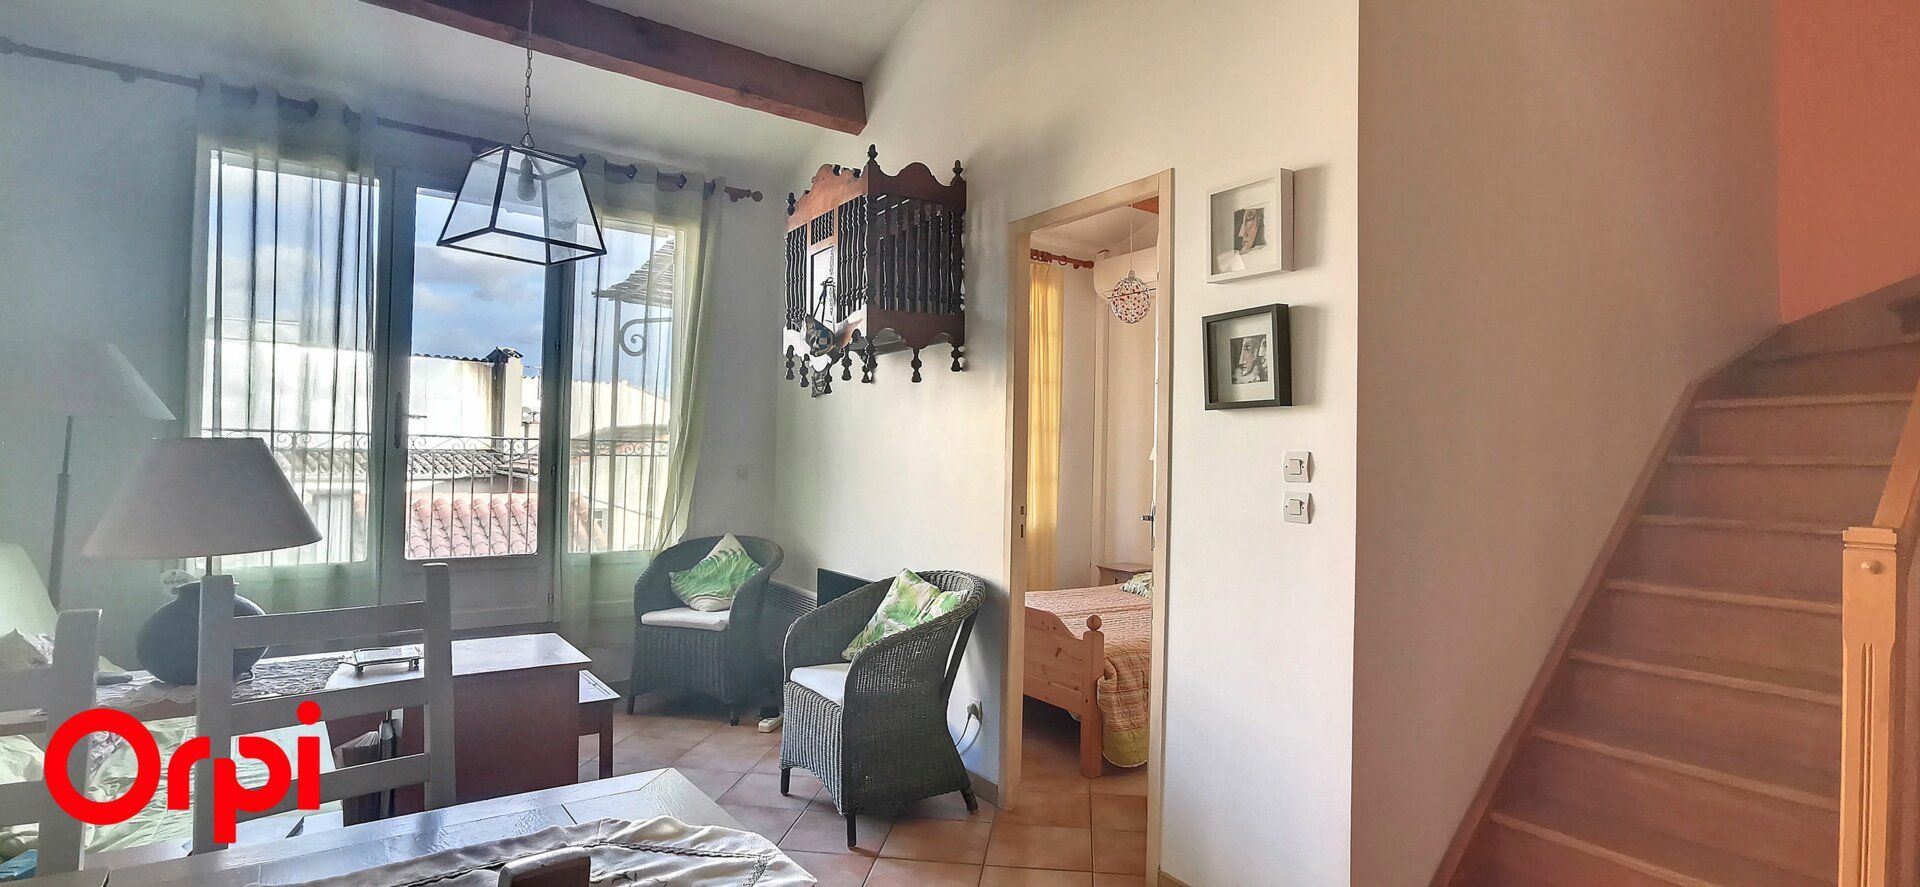 Appartement à vendre 3 57m2 à La Cadière-d'Azur vignette-4